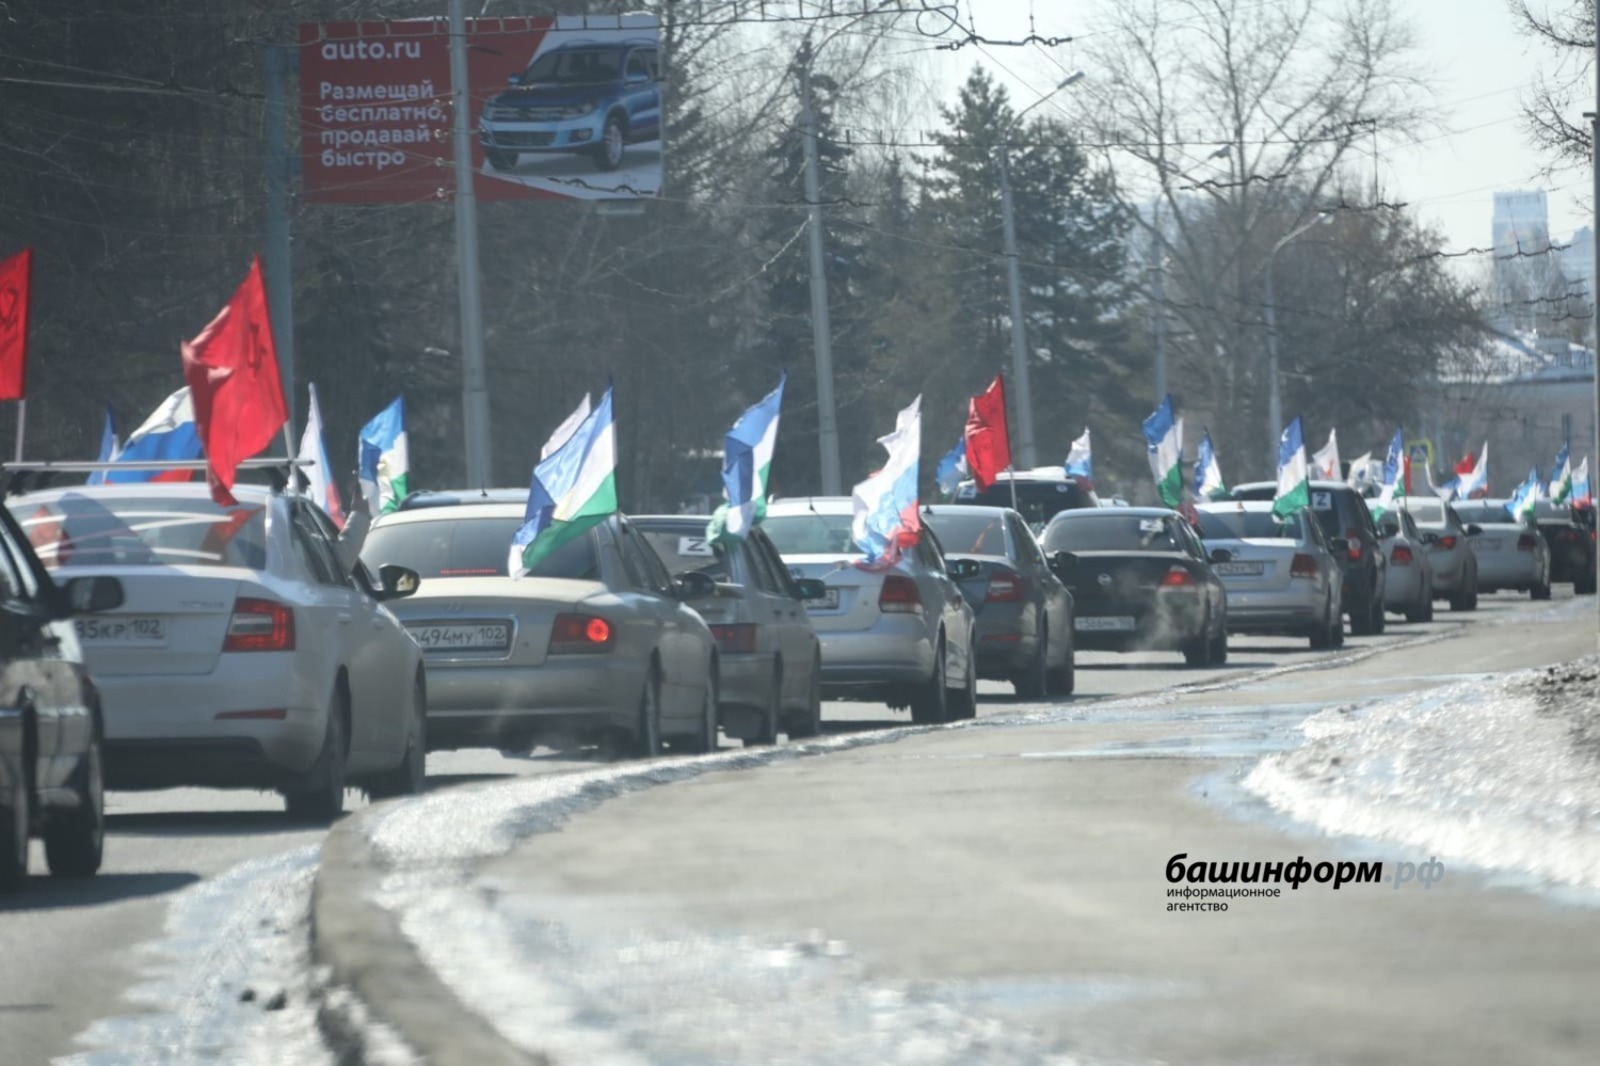 Автопробег в честь годовщины "Крымской весны" состоялся в Уфе